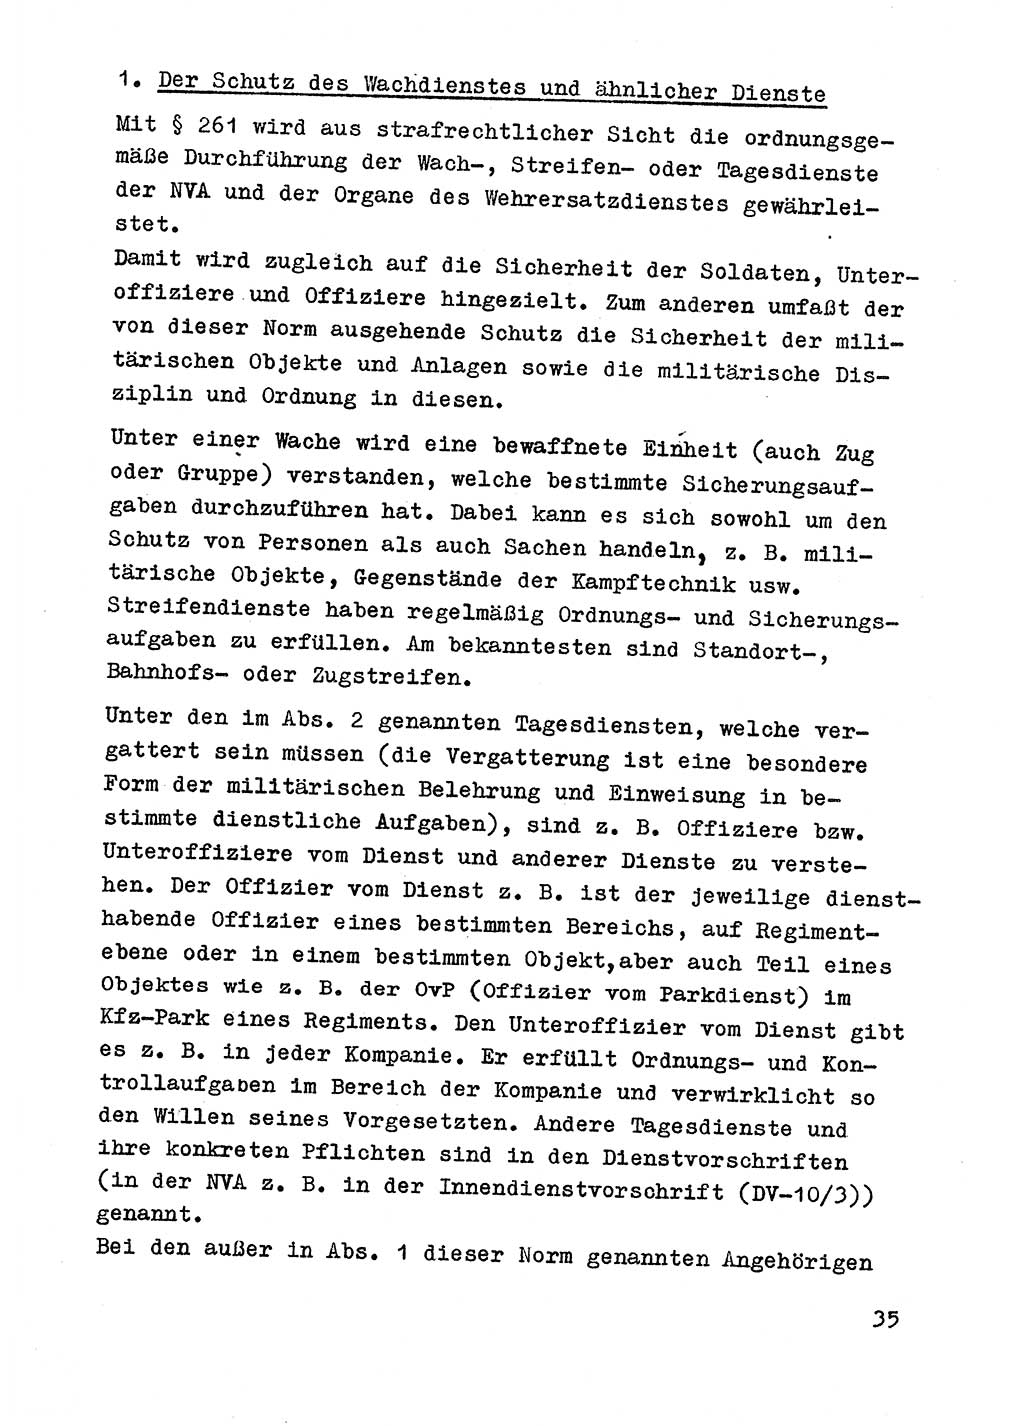 Strafrecht der DDR (Deutsche Demokratische Republik), Besonderer Teil, Lehrmaterial, Heft 9 1969, Seite 35 (Strafr. DDR BT Lehrmat. H. 9 1969, S. 35)